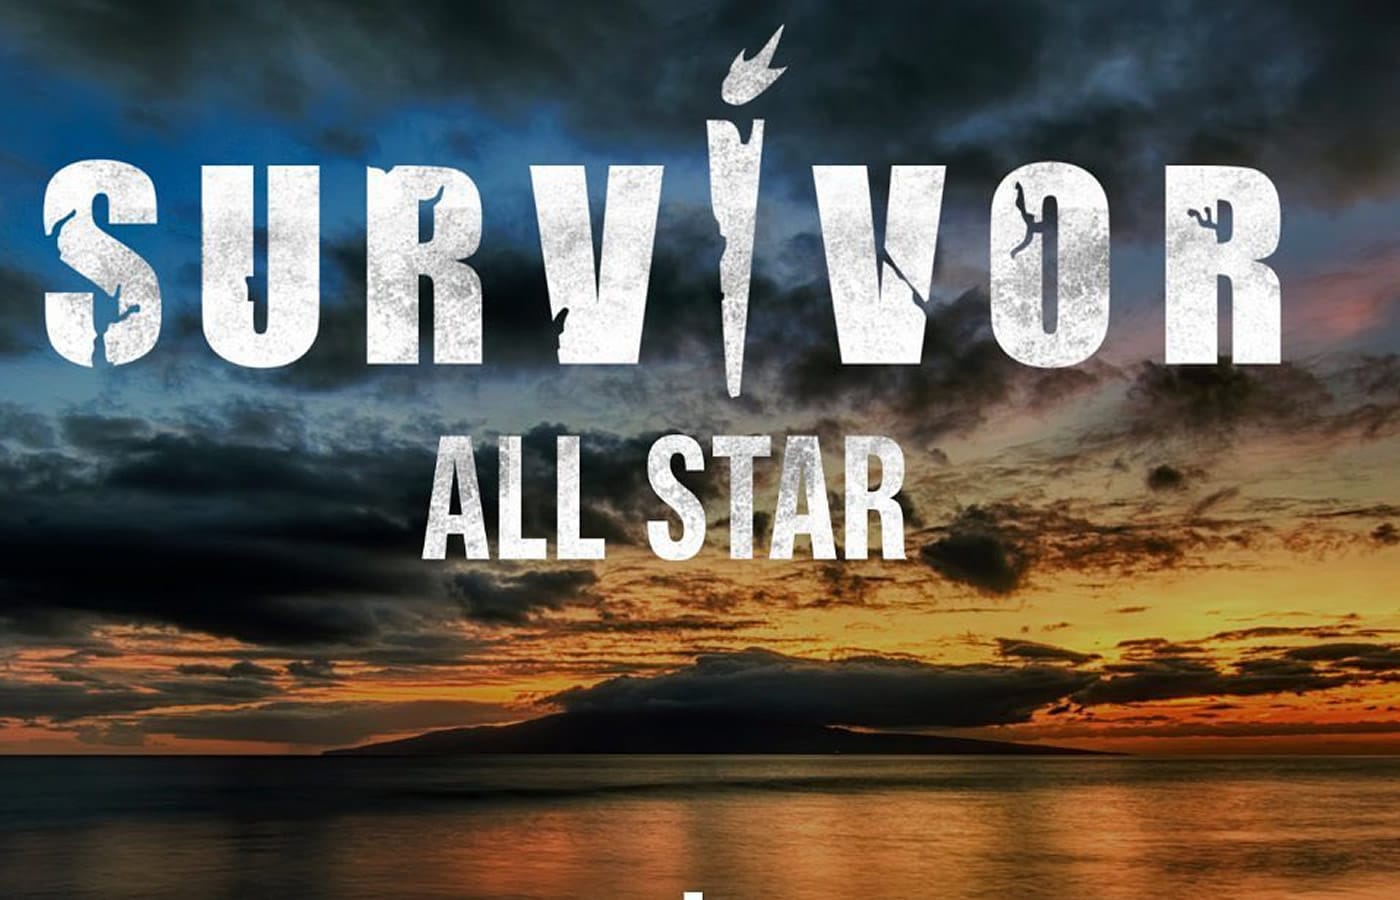 To Survivor επιστρέφει τηλεοπτικά στις 8 Ιανουαρίου με την πιο δυνατή του έκδοση αυτήν του Survivor All Star και εμείς θα σας μεταφέρουμε